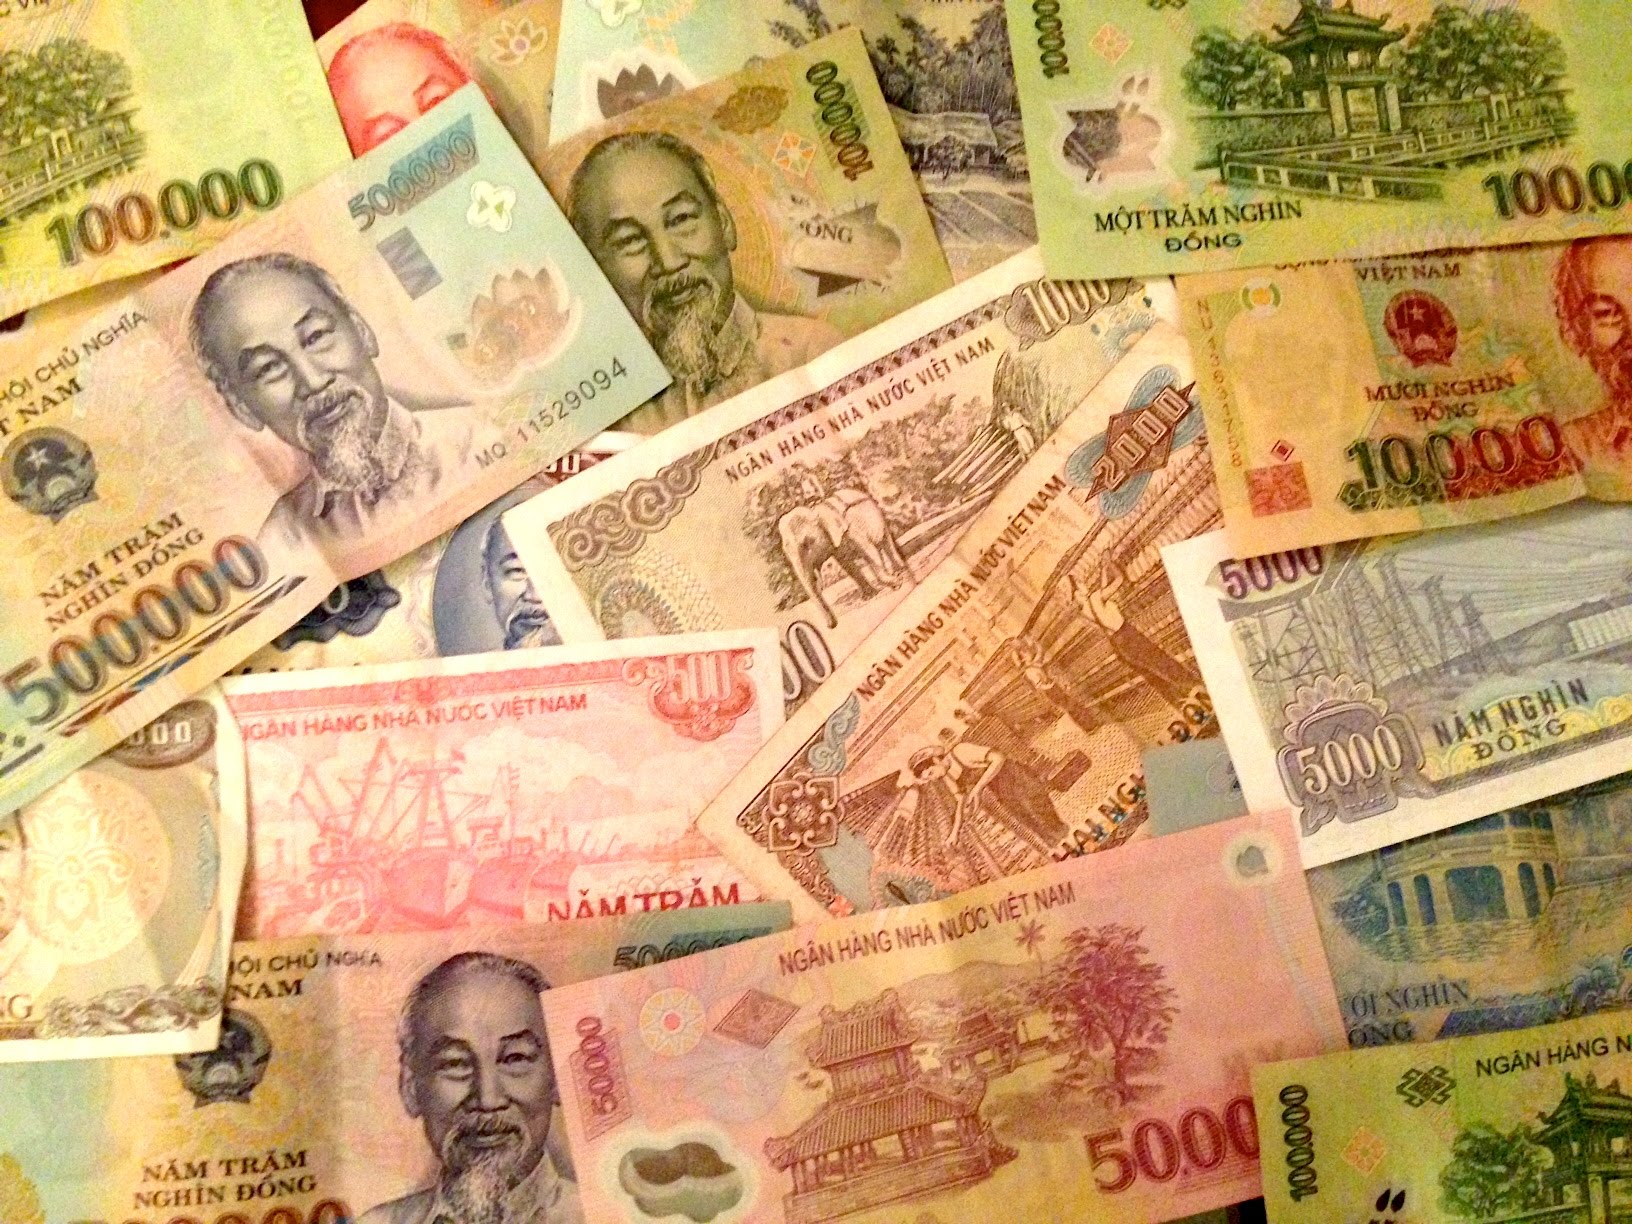 Đô la Việt Nam đã từng được sử dụng trong quá khứ và có giá trị đặc biệt cho những người yêu quý sự lịch sử đất nước. Hãy xem hình ảnh liên quan đến đô la Việt Nam để cùng nhau khám phá giá trị của đồng tiền này.